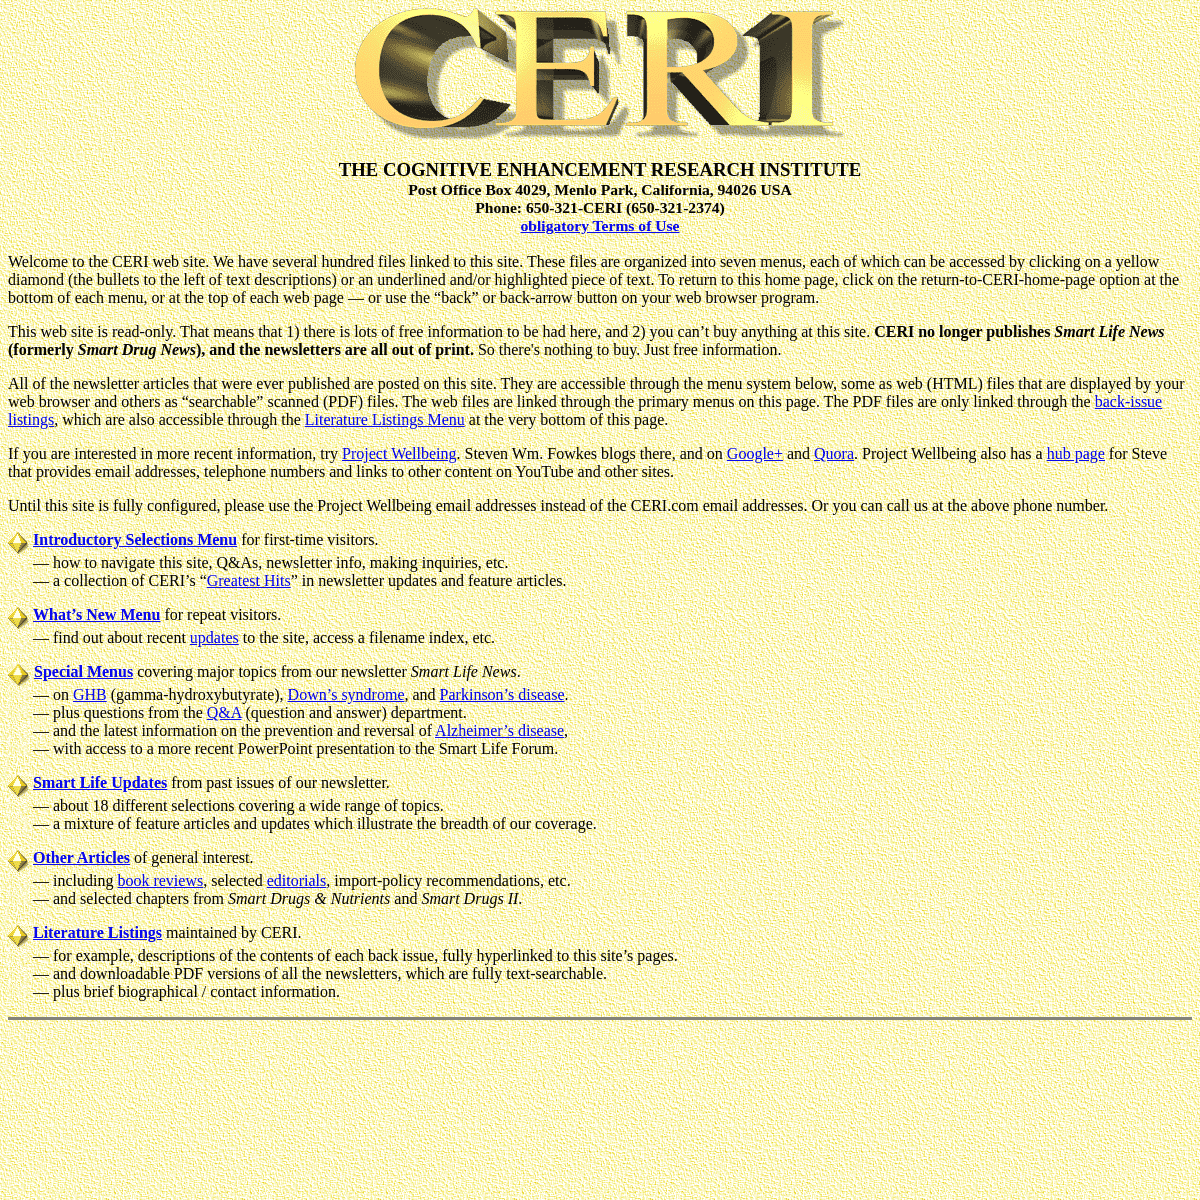 A complete backup of https://ceri.com